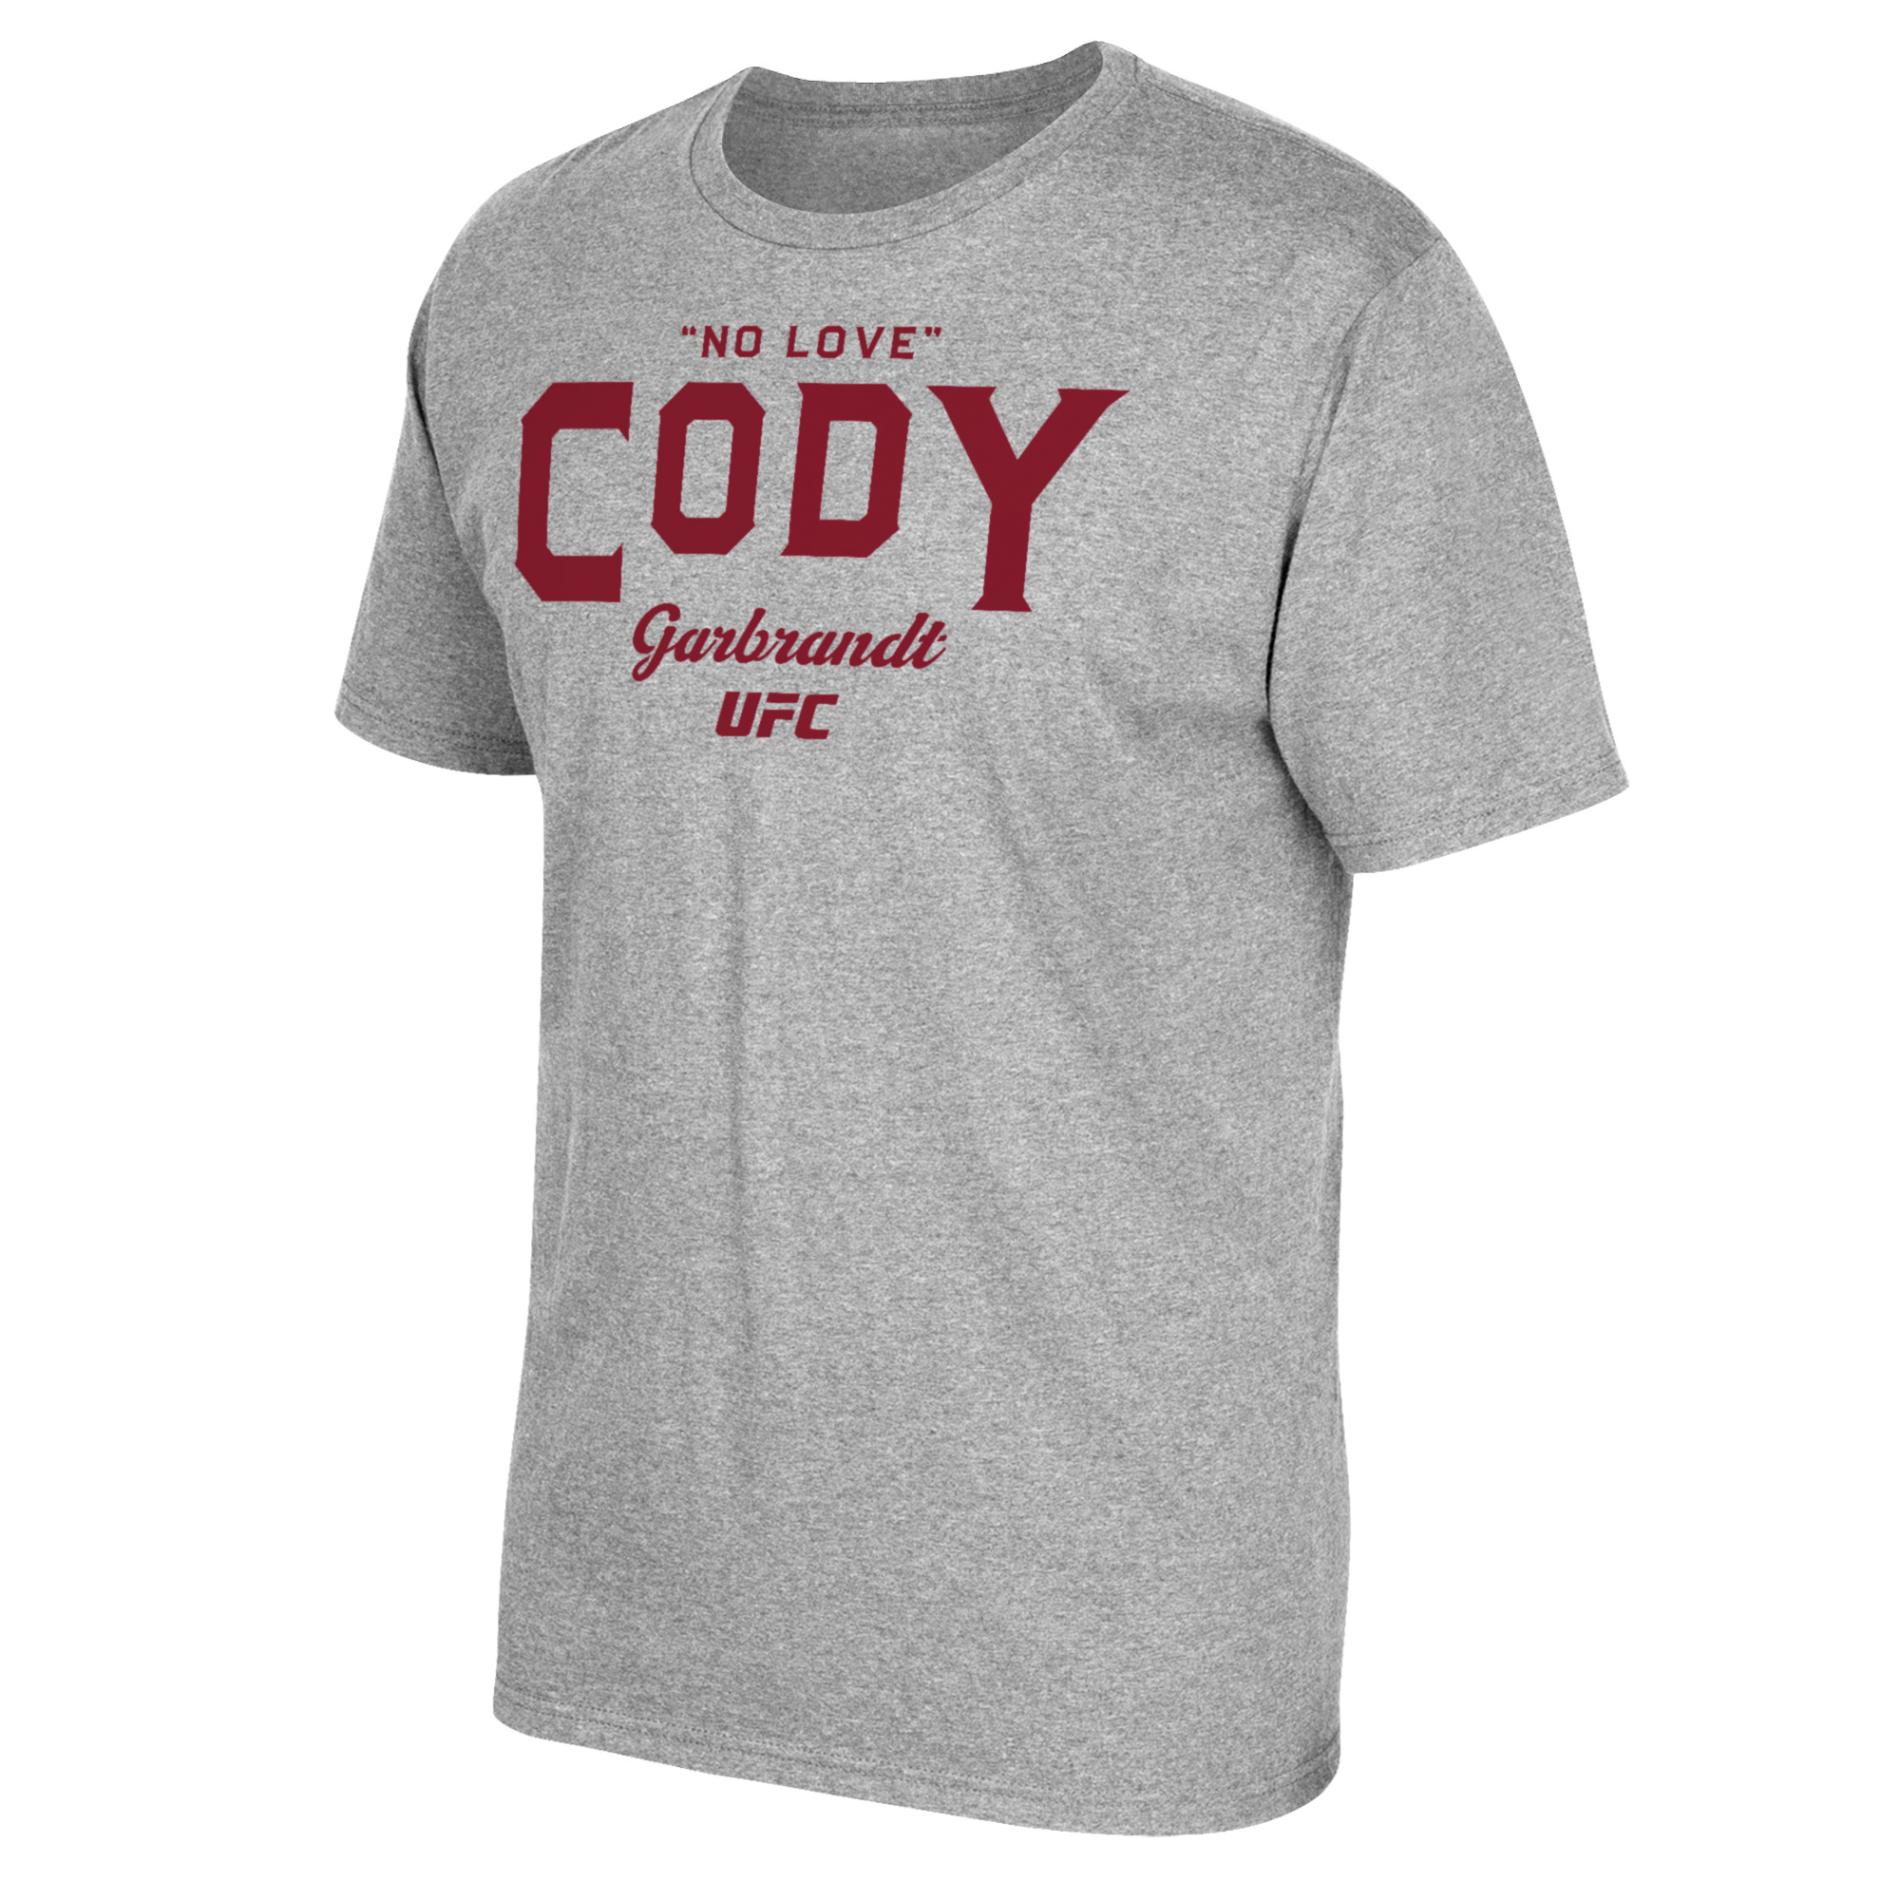 UFC Men's Graphic T-Shirt - Cody Garbrandt